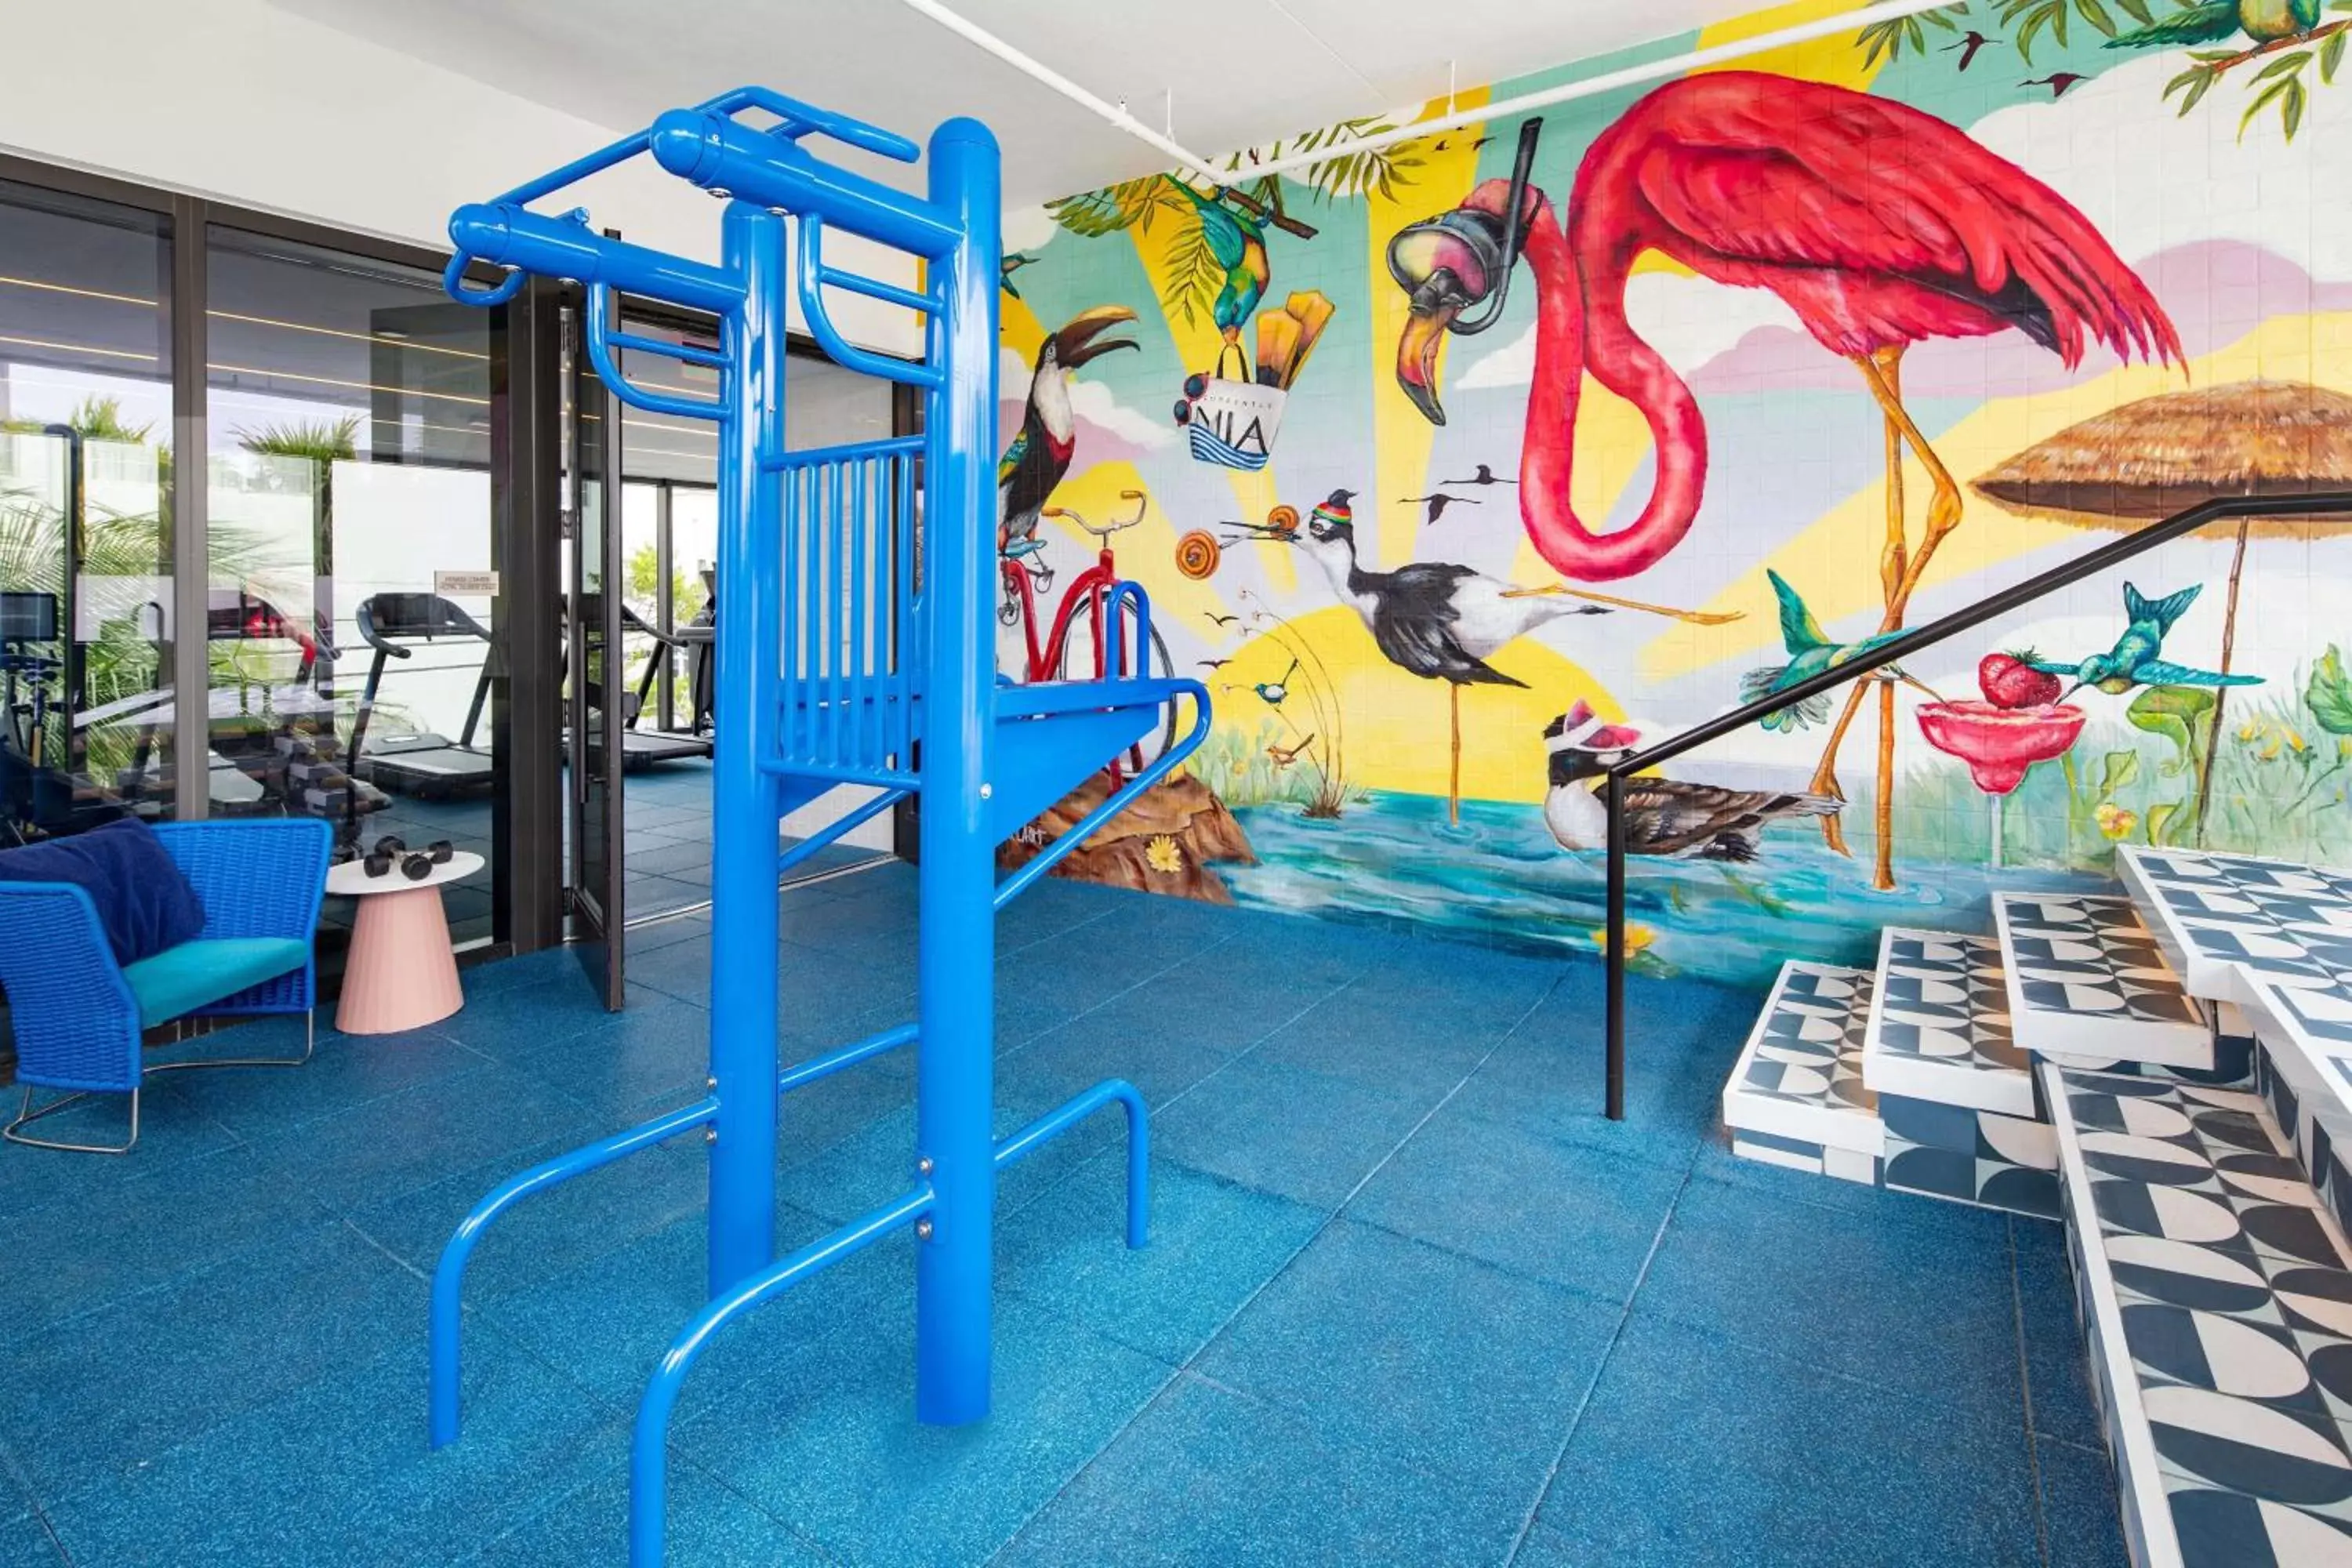 Fitness centre/facilities in Moxy Miami South Beach